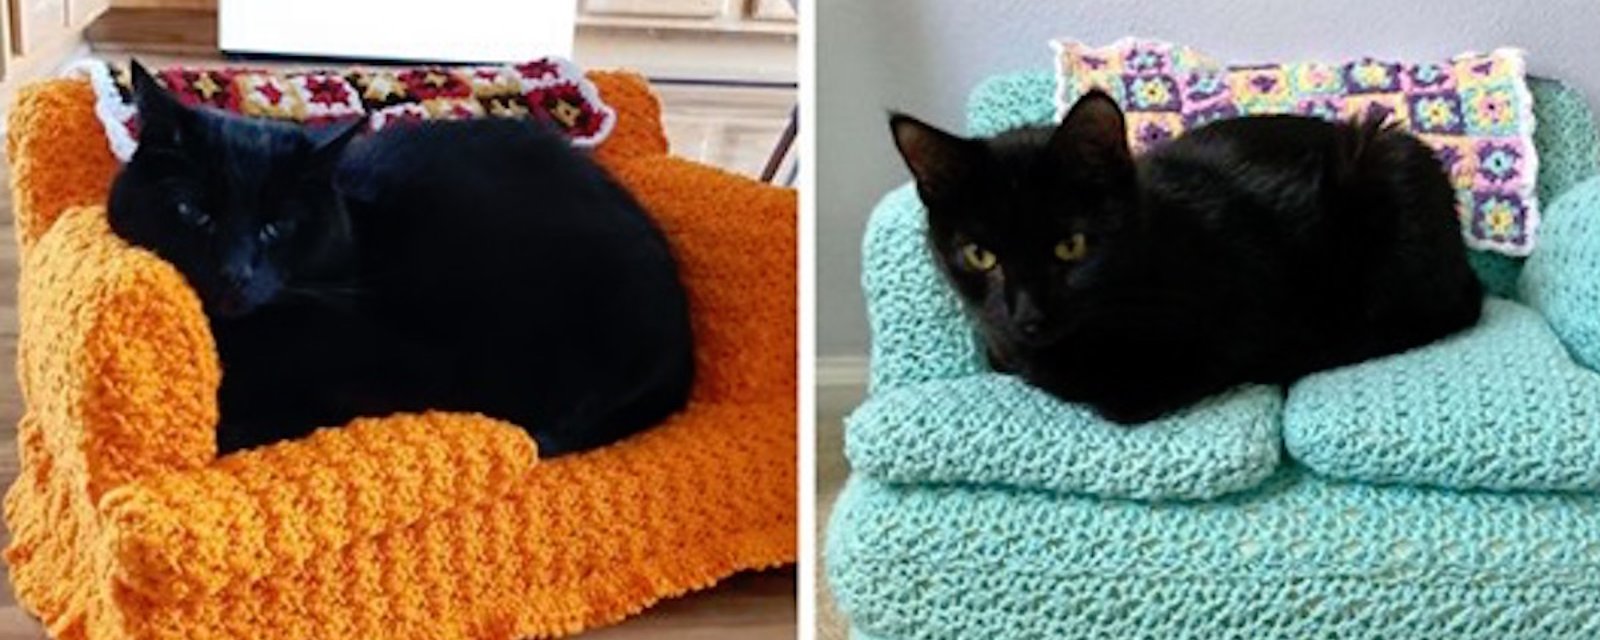 Tendance confinement: pendant leur temps libre, les gens fabriquent des canapés pour chats au crochet